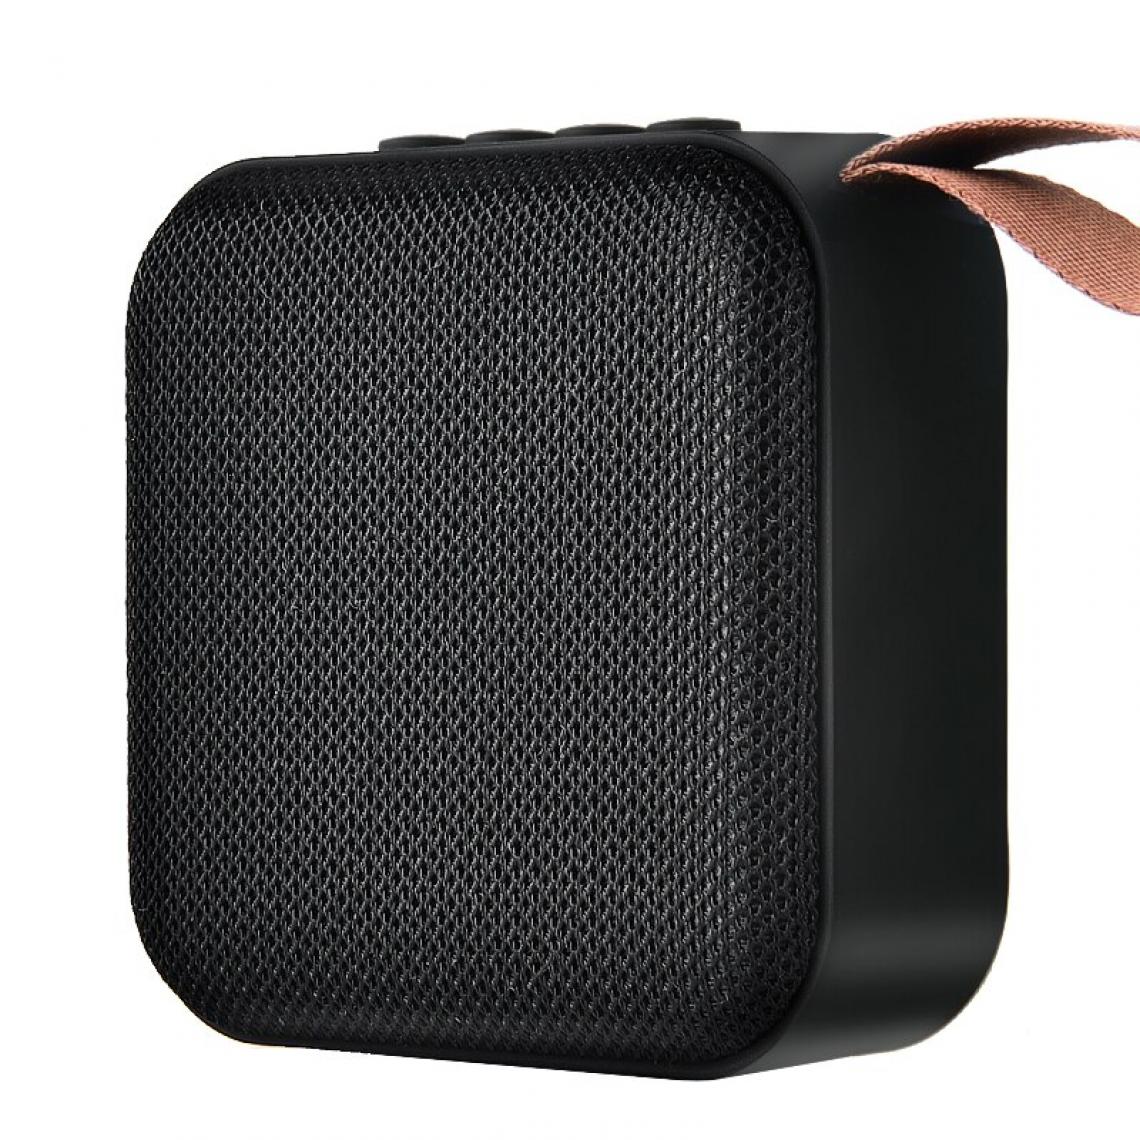 Universal - Mini haut-parleur Bluetooth sans fil Haut-parleur portable stéréo Subwoofer Bluetooth 4.2 avec haut-parleurs extérieurs SD FM | Haut-parleurs portables (noir) - Hauts-parleurs